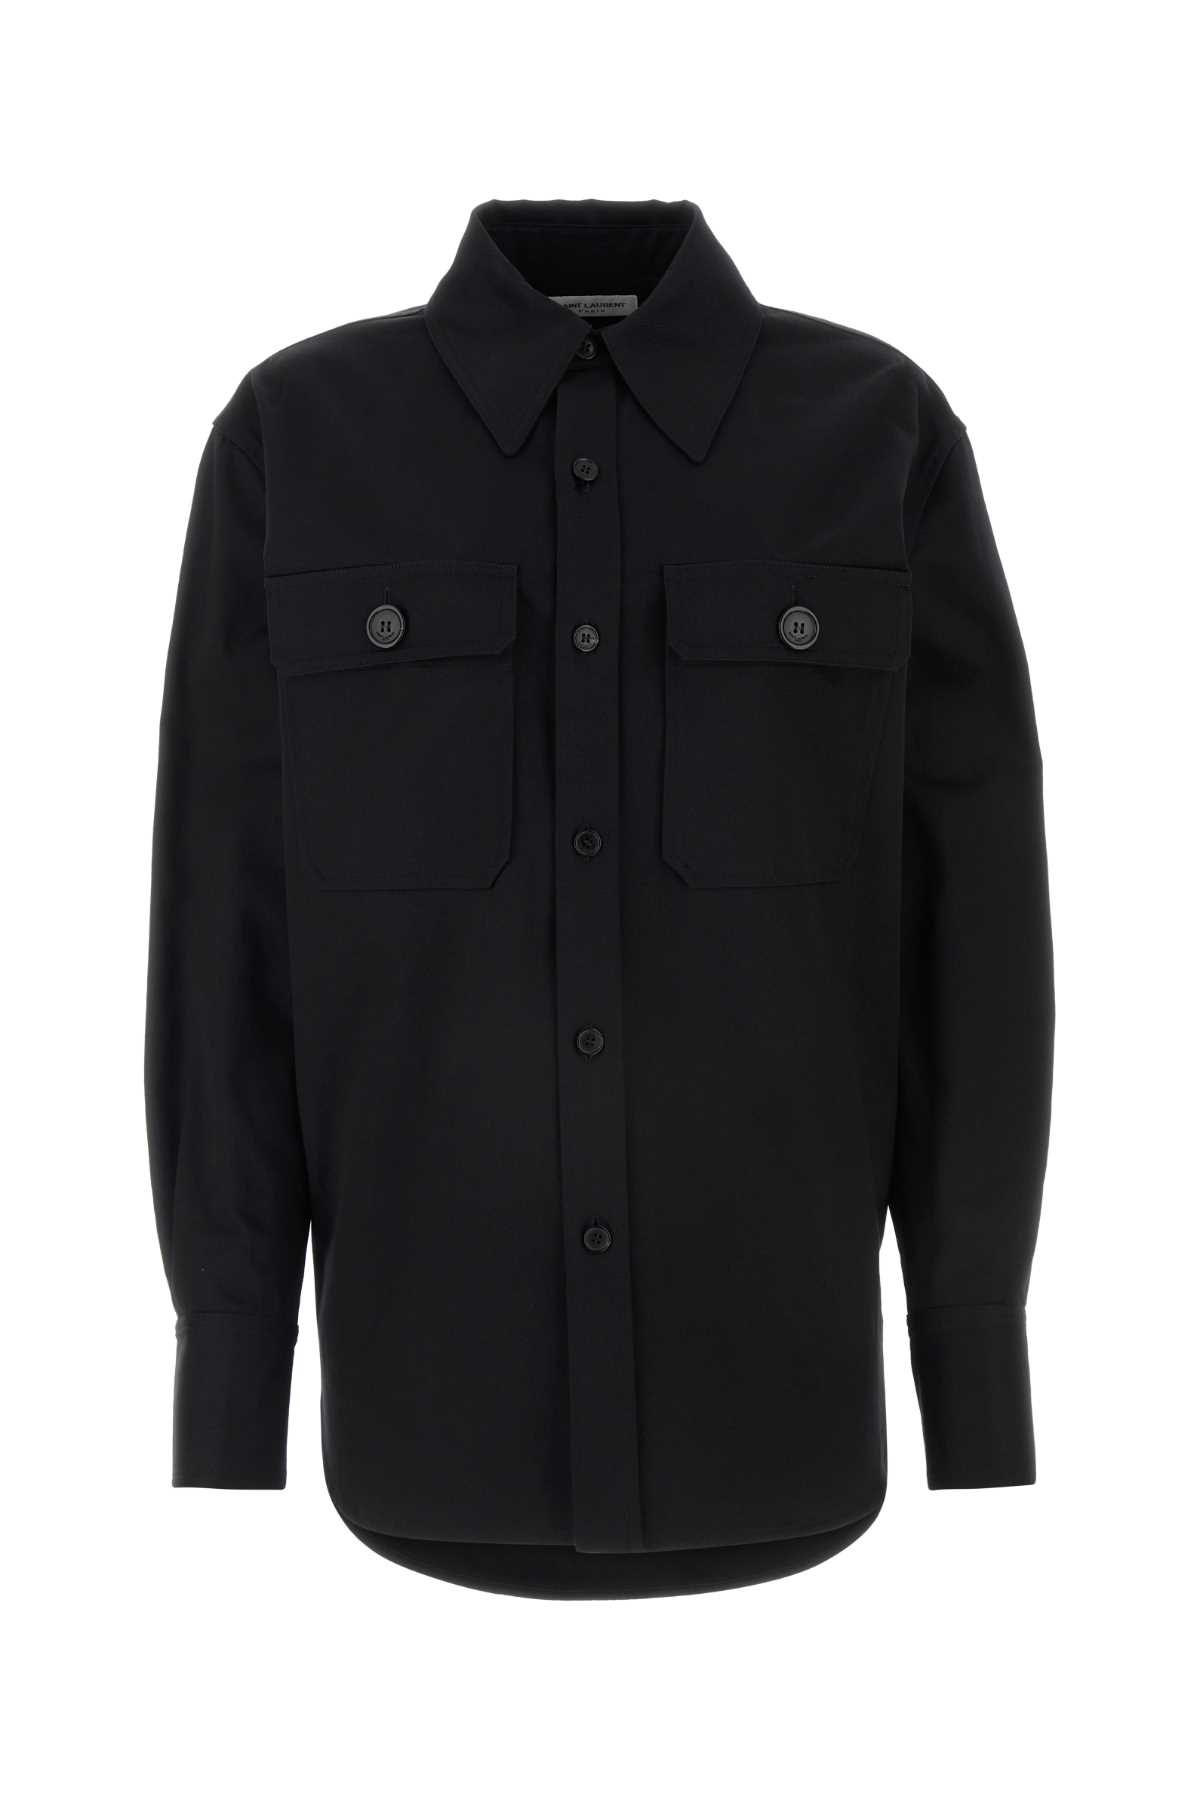 Saint Laurent Black Cotton Shirt In Noir